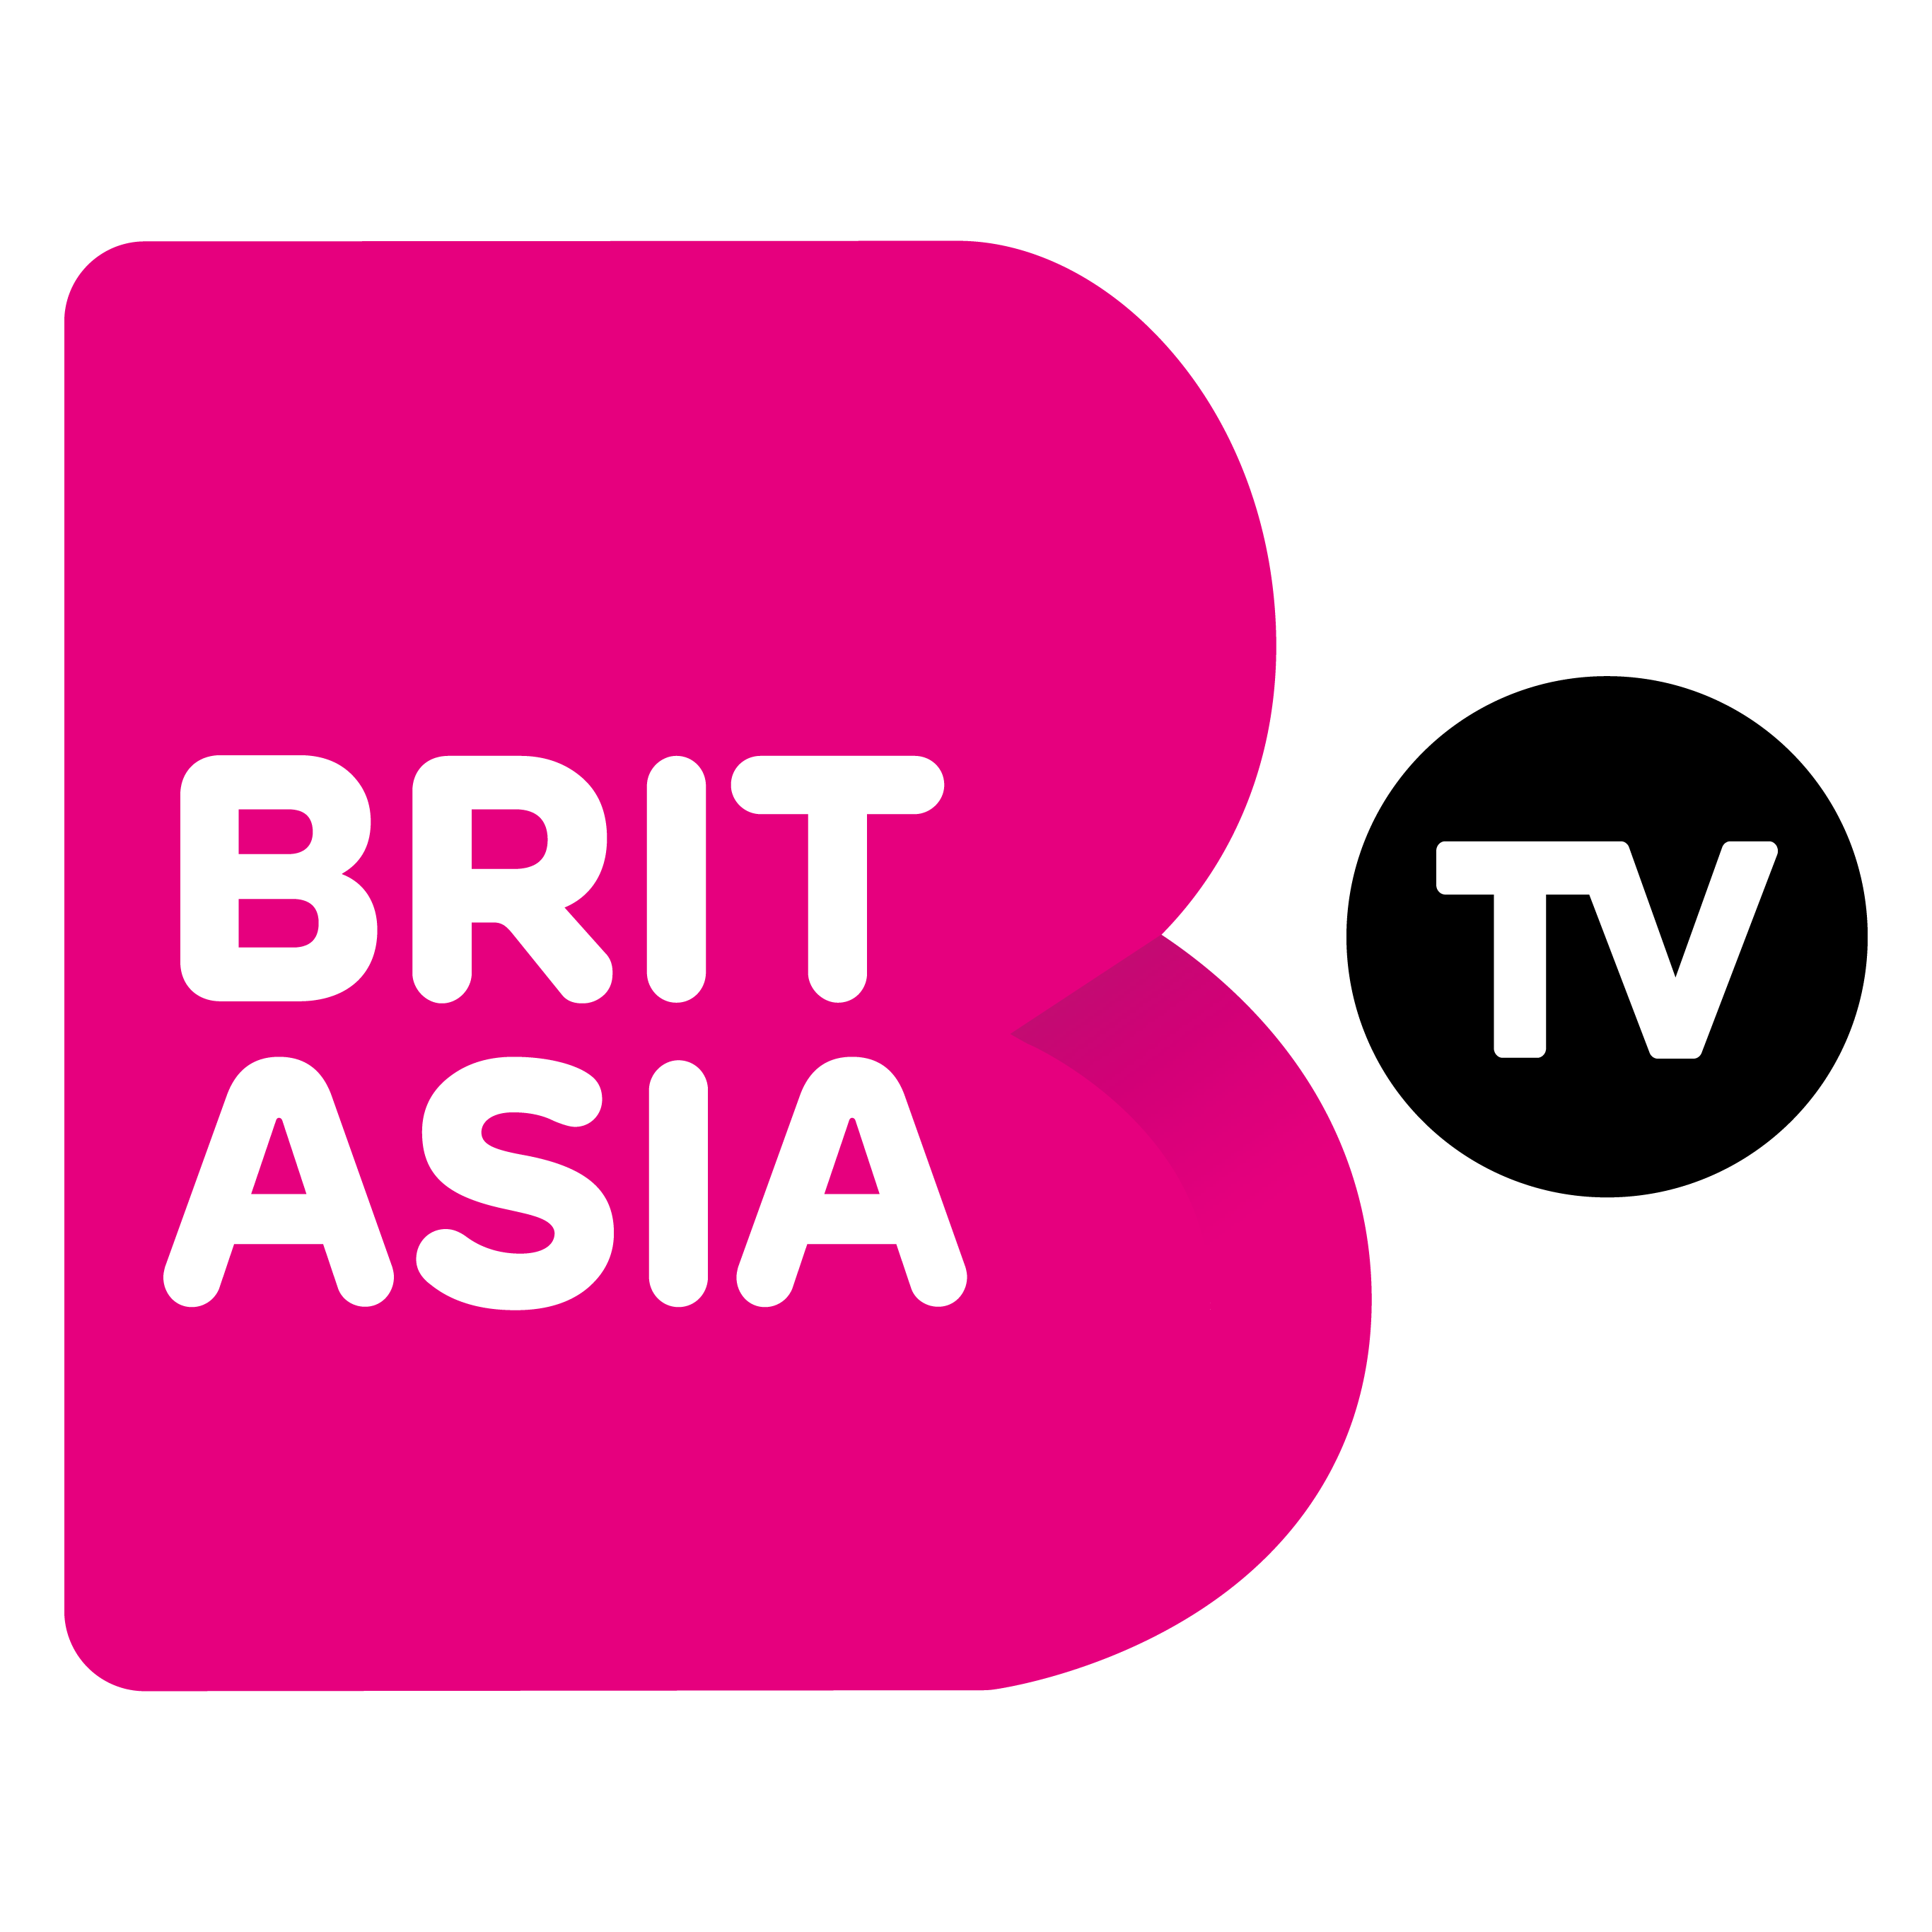 Brit Asia TV